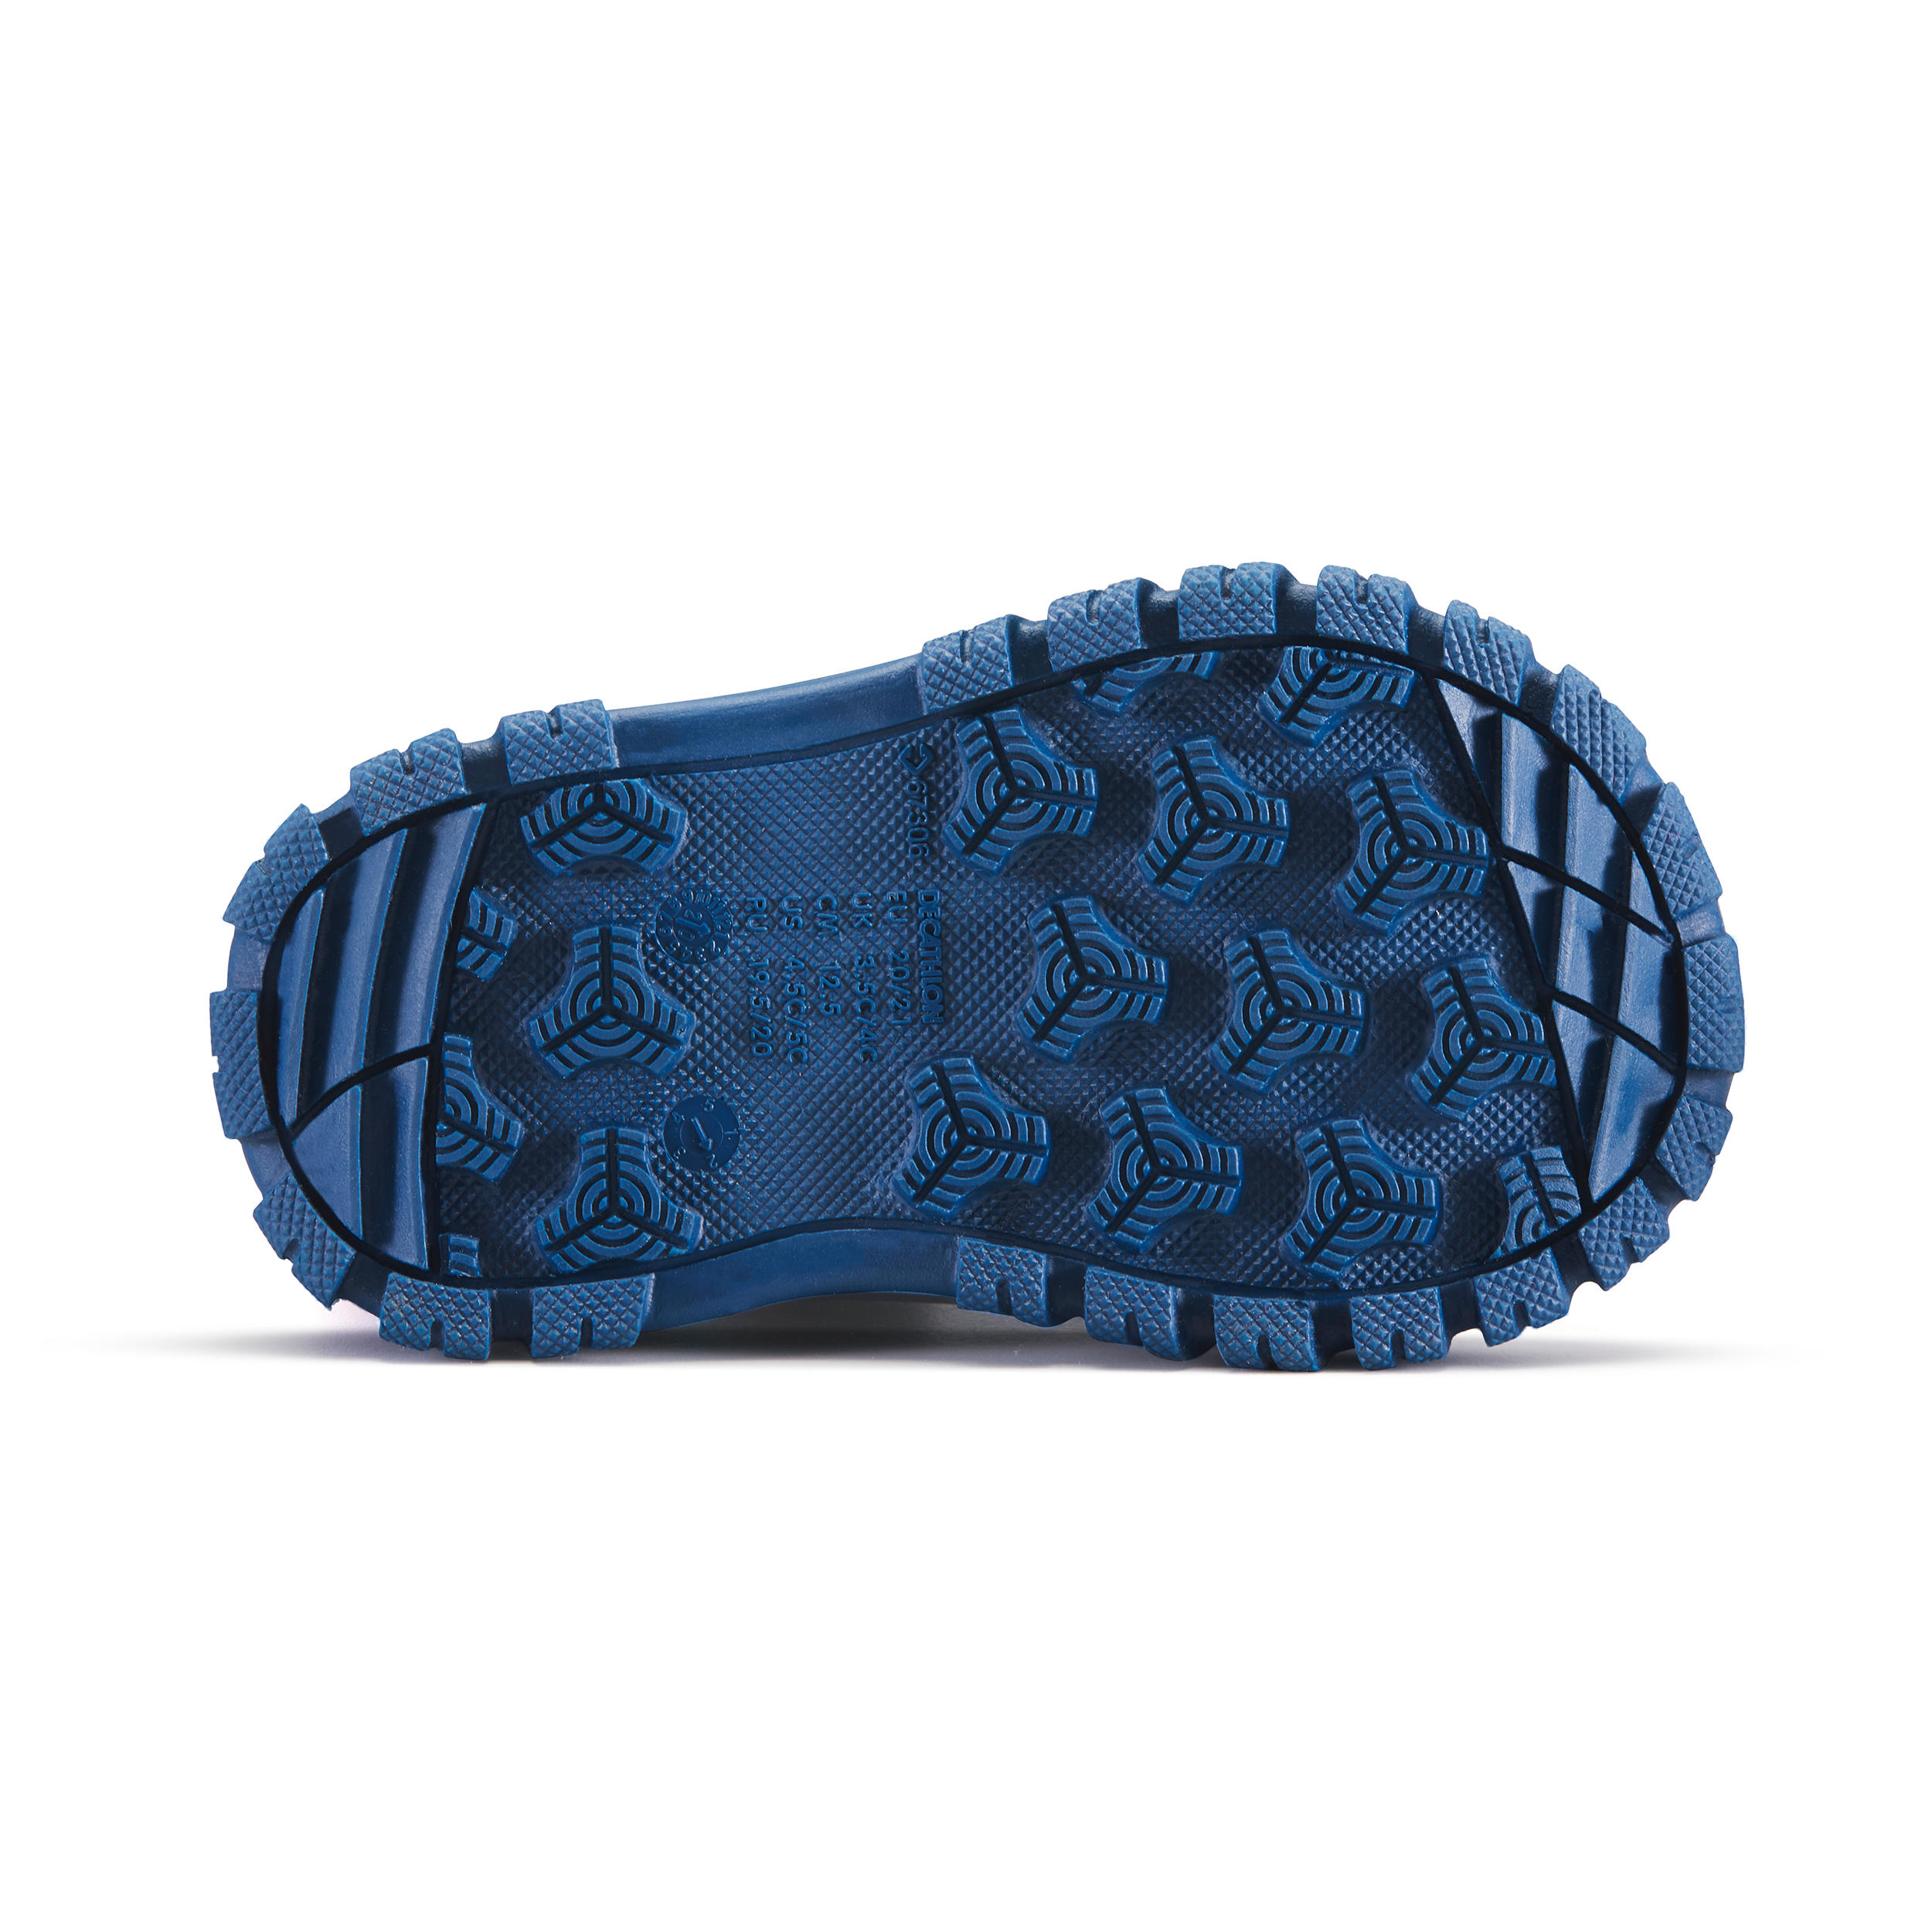 Playshoes Surchaussures imperméables neige blue jean - Tipeton